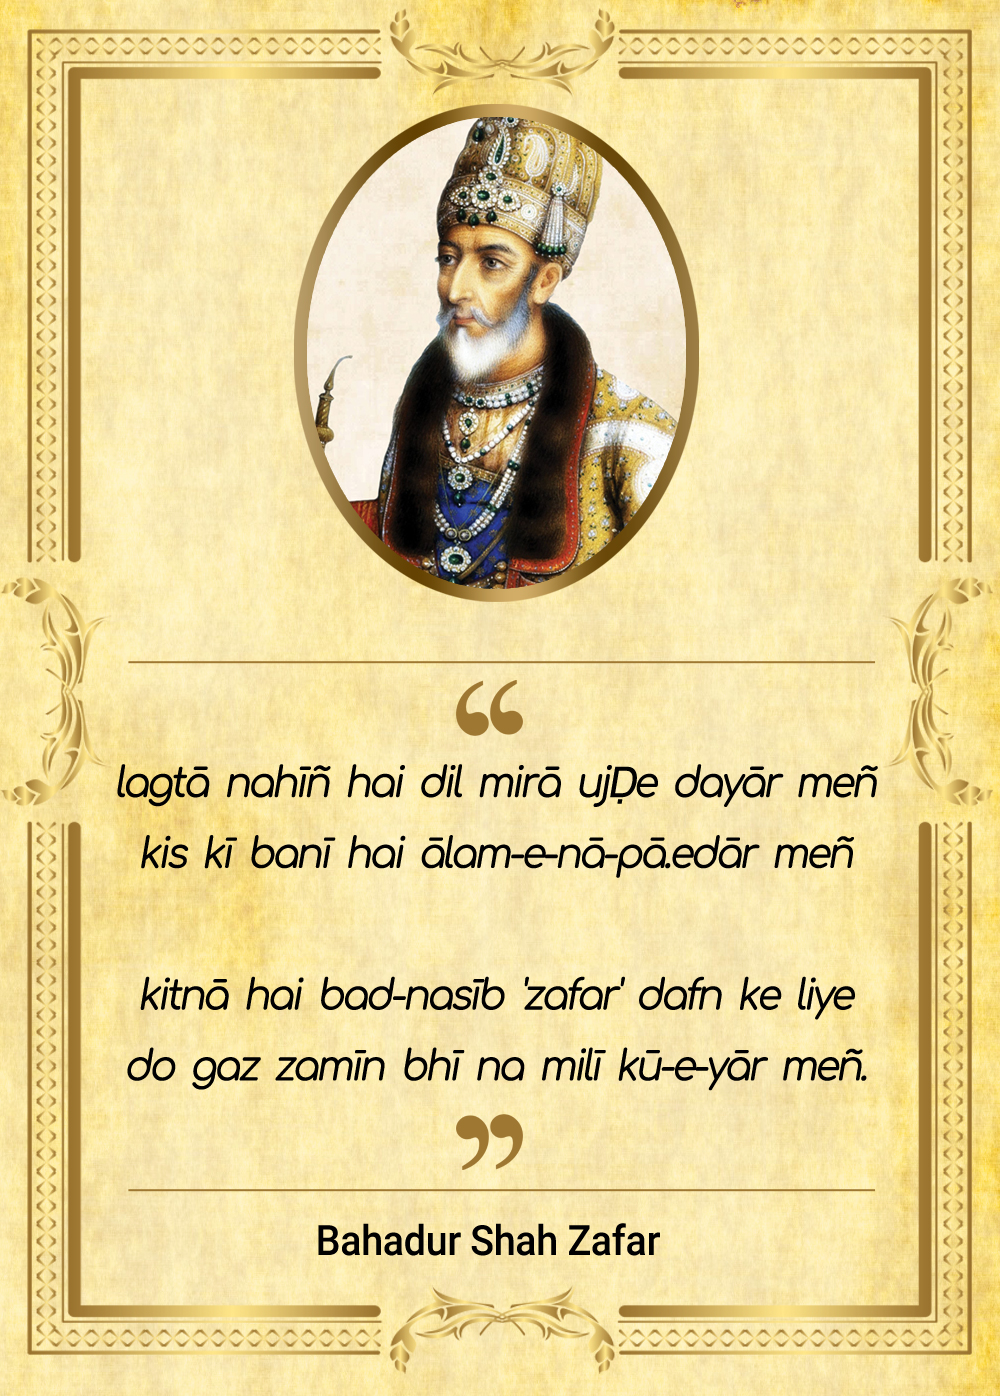 Bahadur Shah Zafar's poem